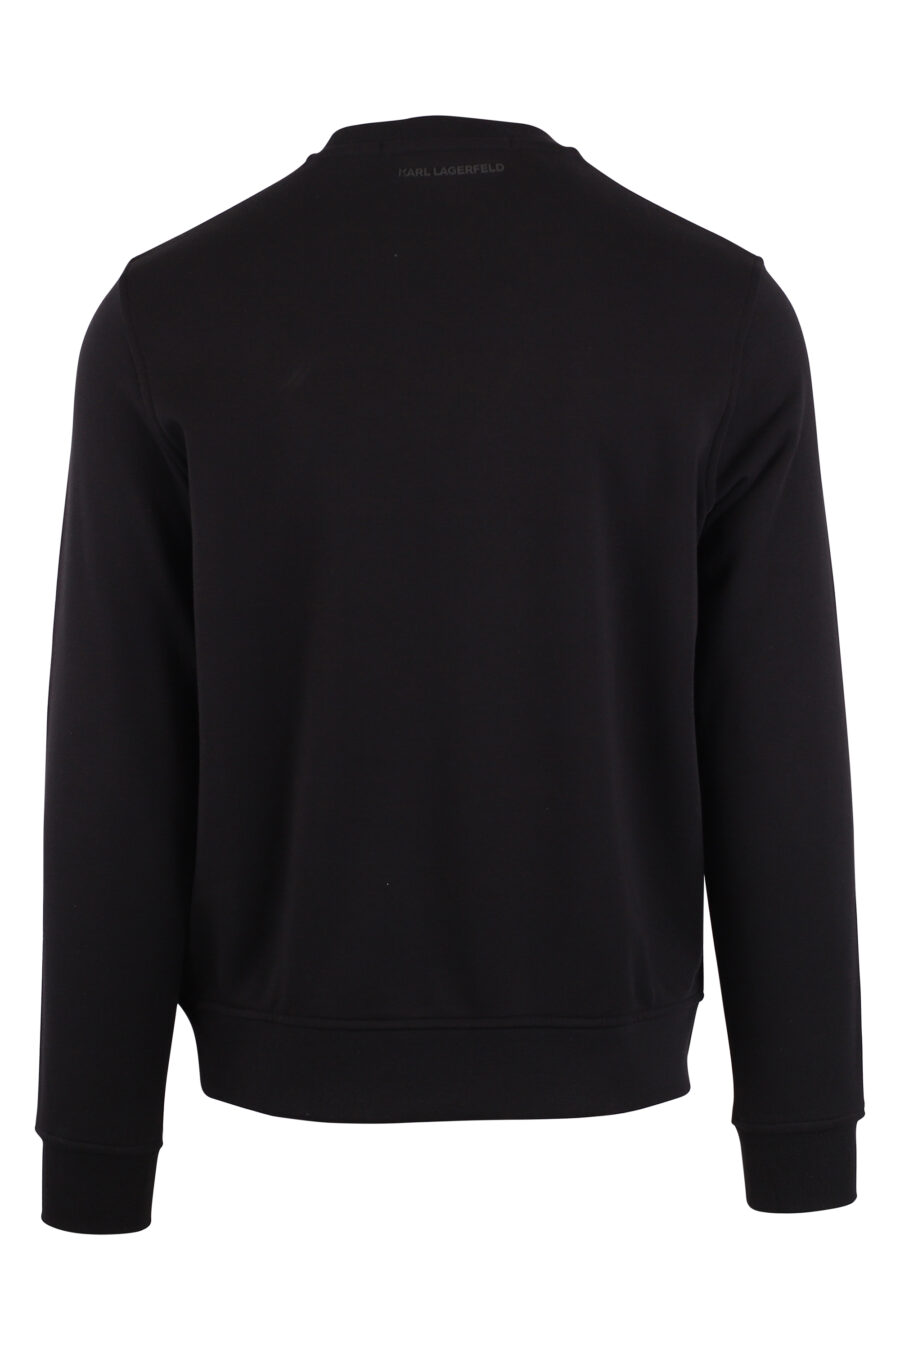 Black sweatshirt with orange "rue st guillaume" maxilogo - IMG 9426